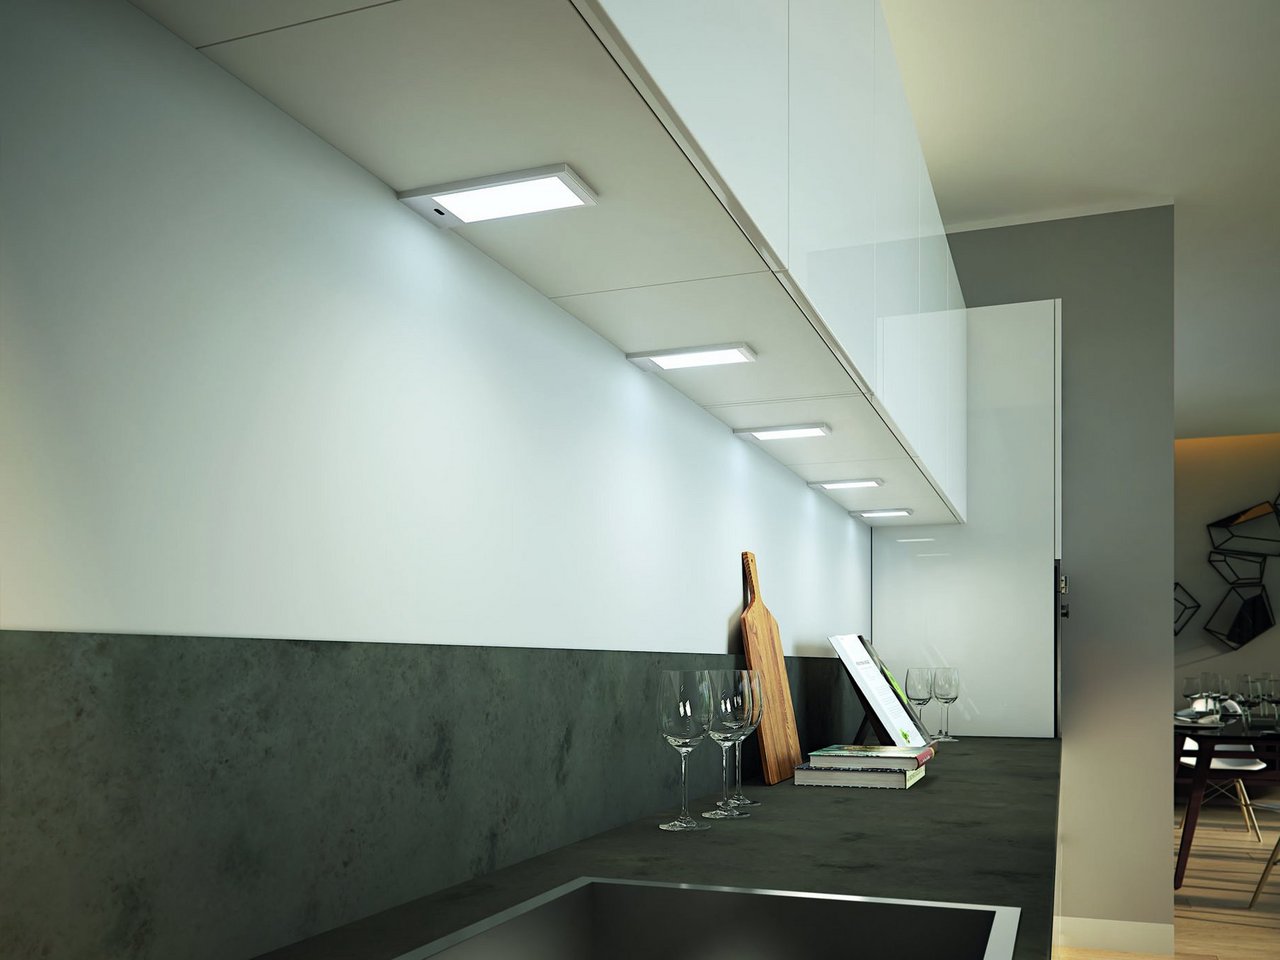 Eclairage & reglette LED sous meuble cuisine